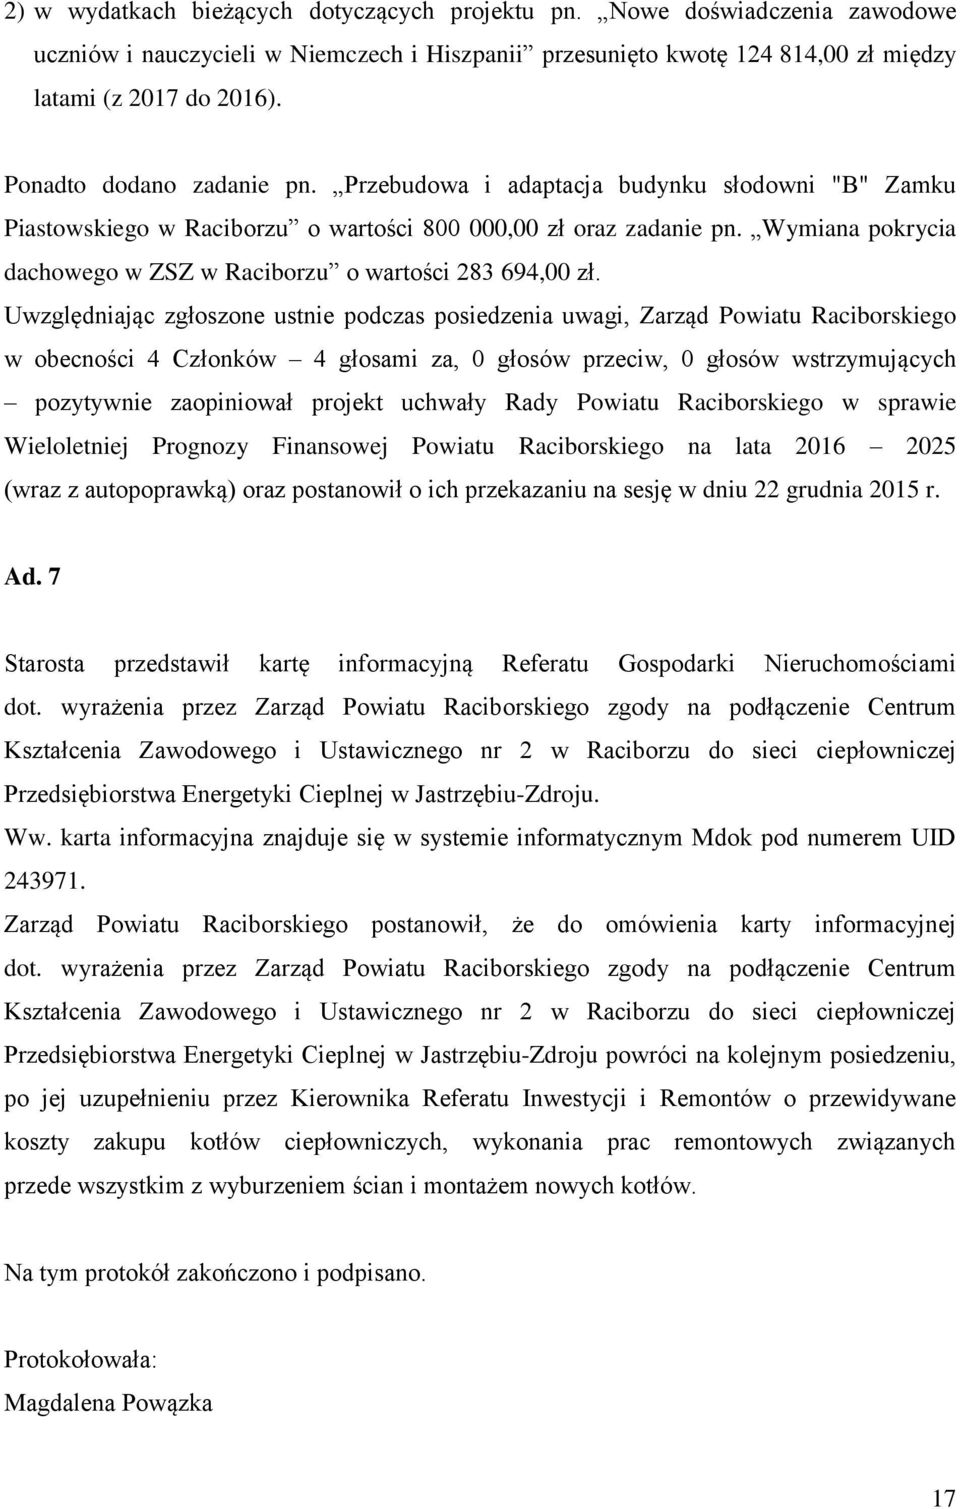 Wymiana pokrycia dachowego w ZSZ w Raciborzu o wartości 283 694,00 zł.